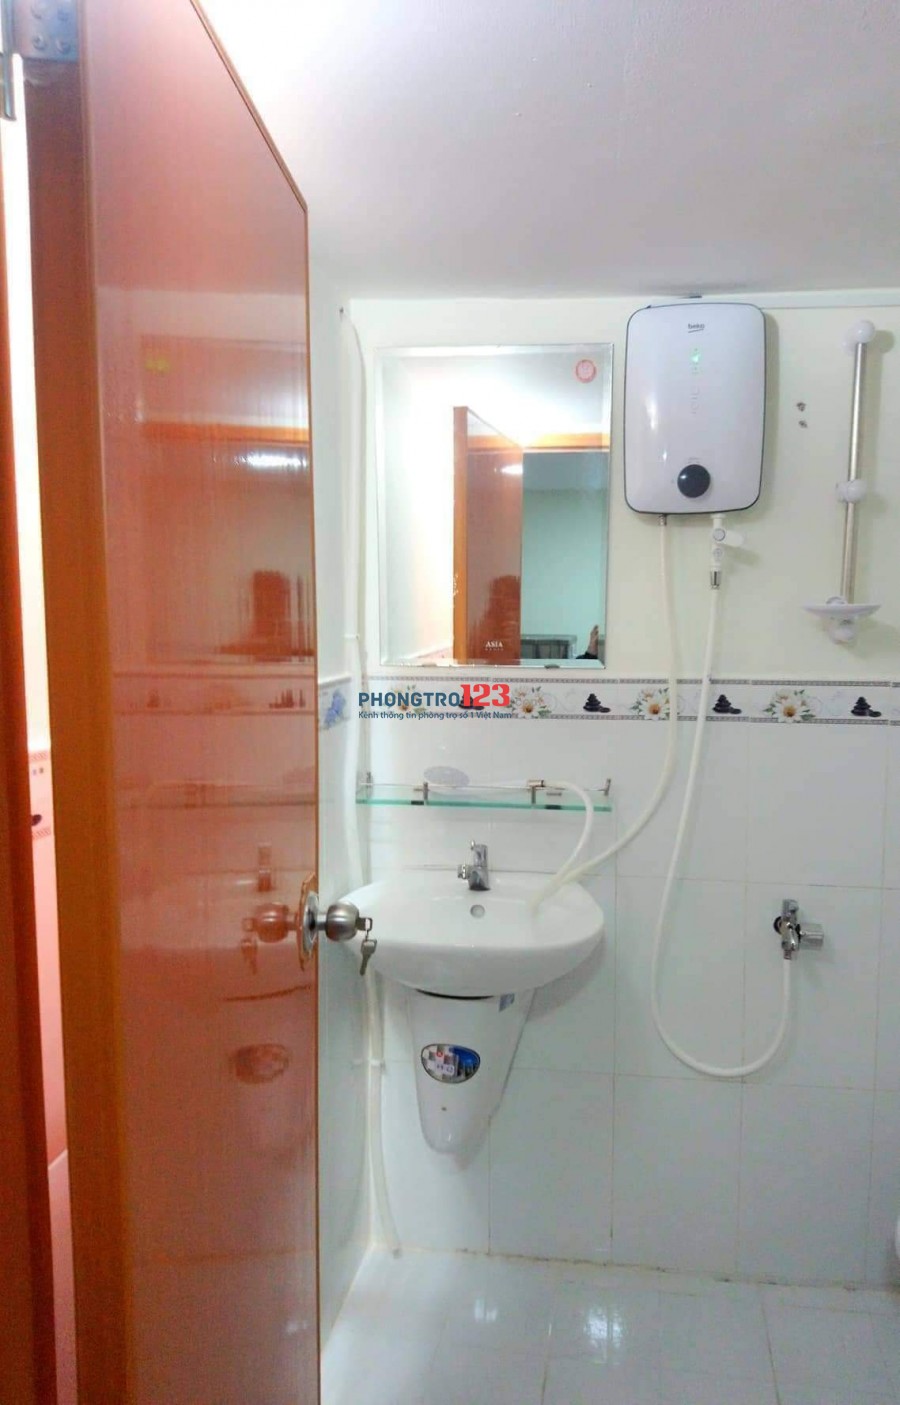 Phòng trọ Cao cấp đường Huỳnh Tấn Phát Q7 Miễn Phí 1 tháng tiền phòng giá 3.2 triệu có máy lạnh